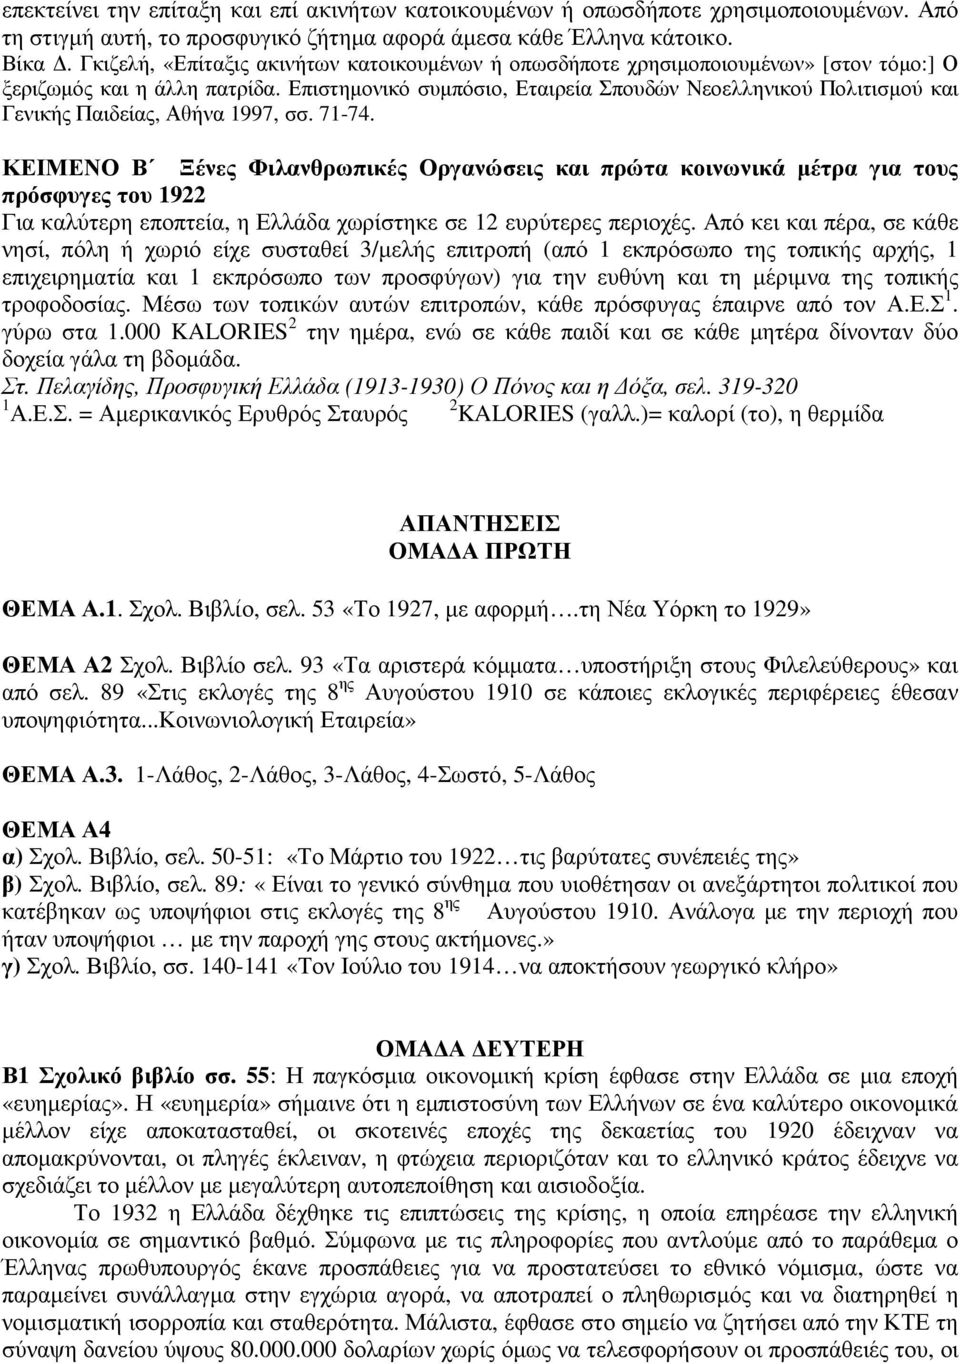 Επιστηµονικό συµπόσιο, Εταιρεία Σπουδών Νεοελληνικού Πολιτισµού και Γενικής Παιδείας, Αθήνα 1997, σσ. 71-74.